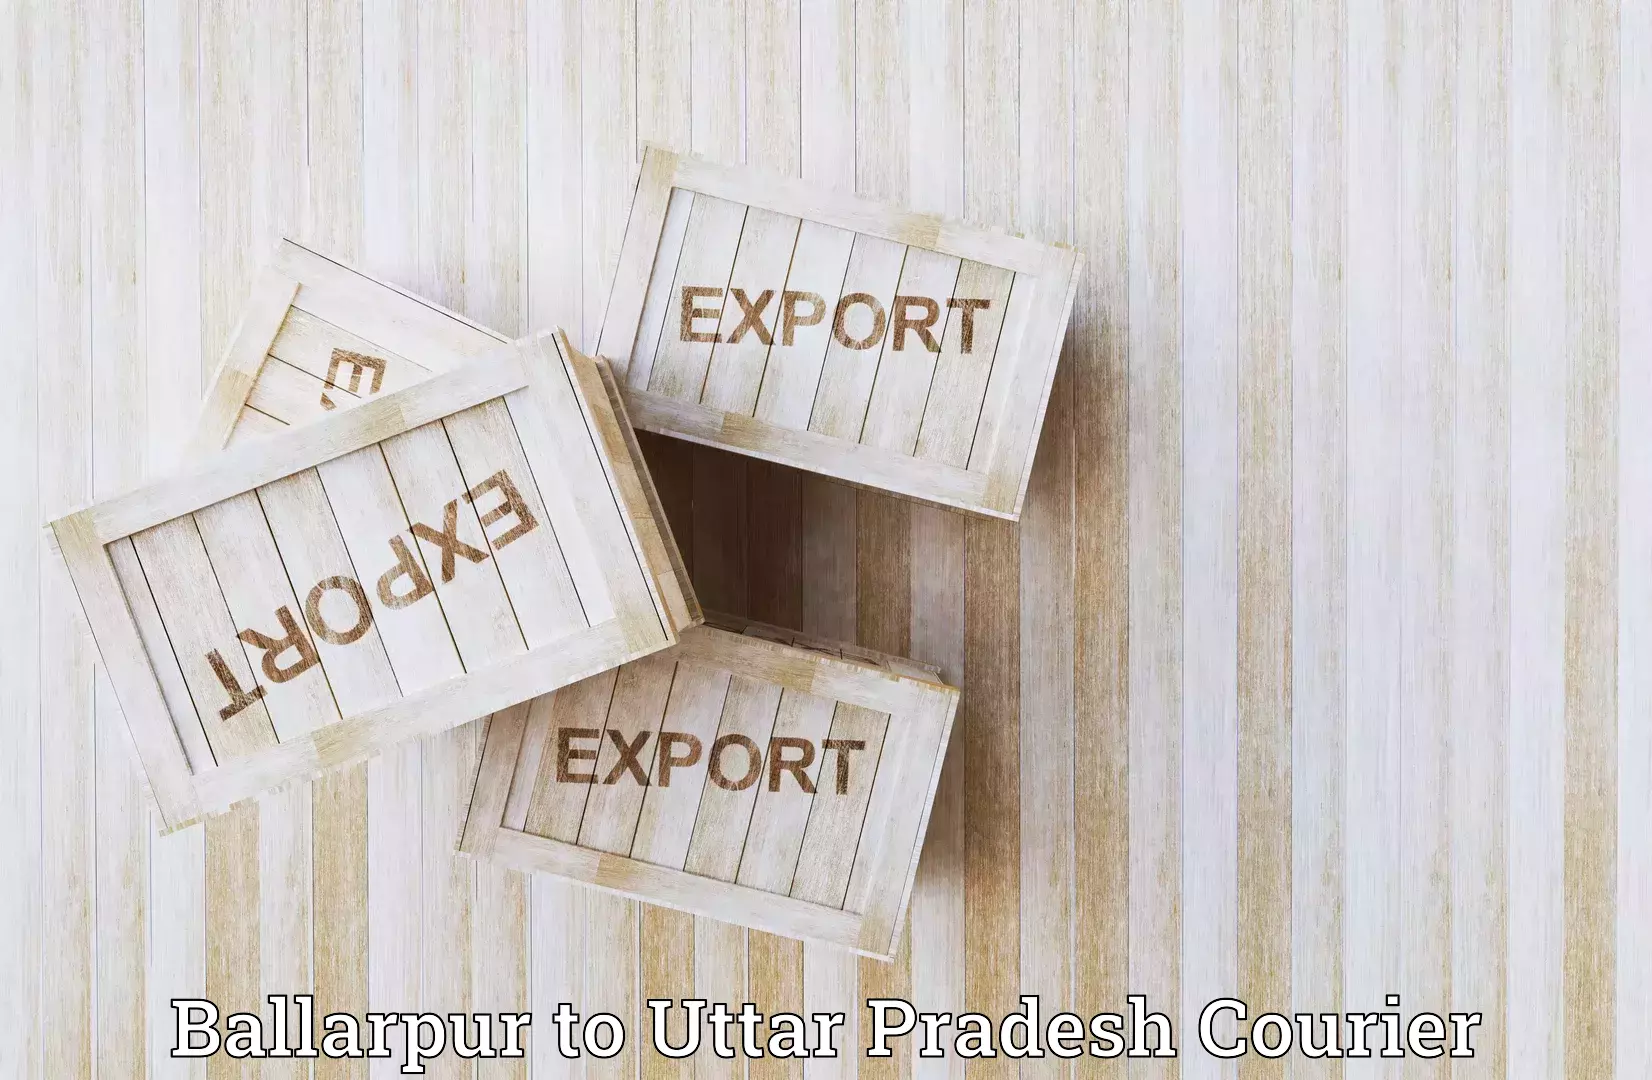 Efficient courier operations Ballarpur to Sahatwar